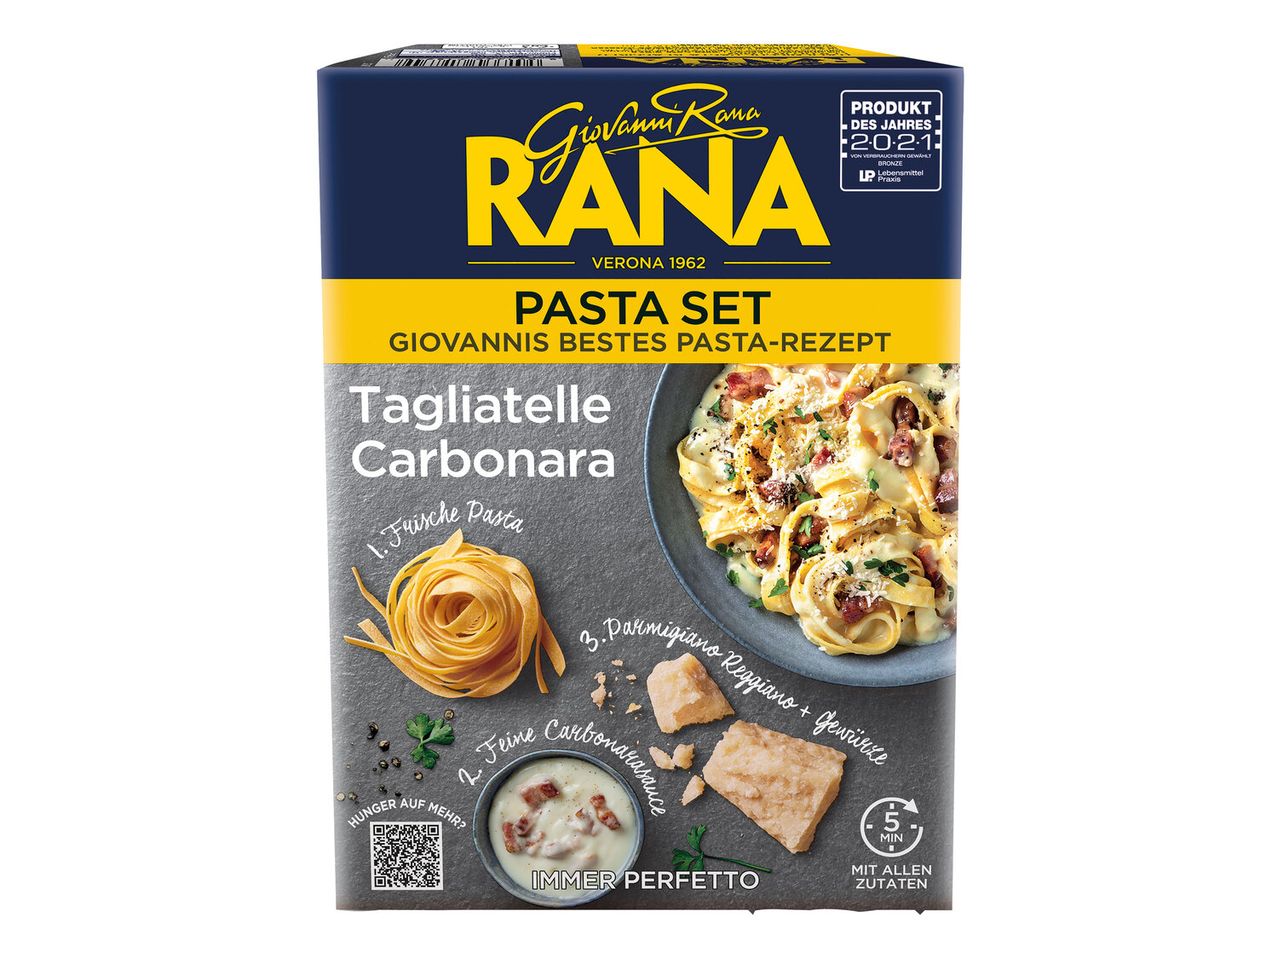 Neueste Produkte aus dem Ausland Rana Pasta Set Giovanni